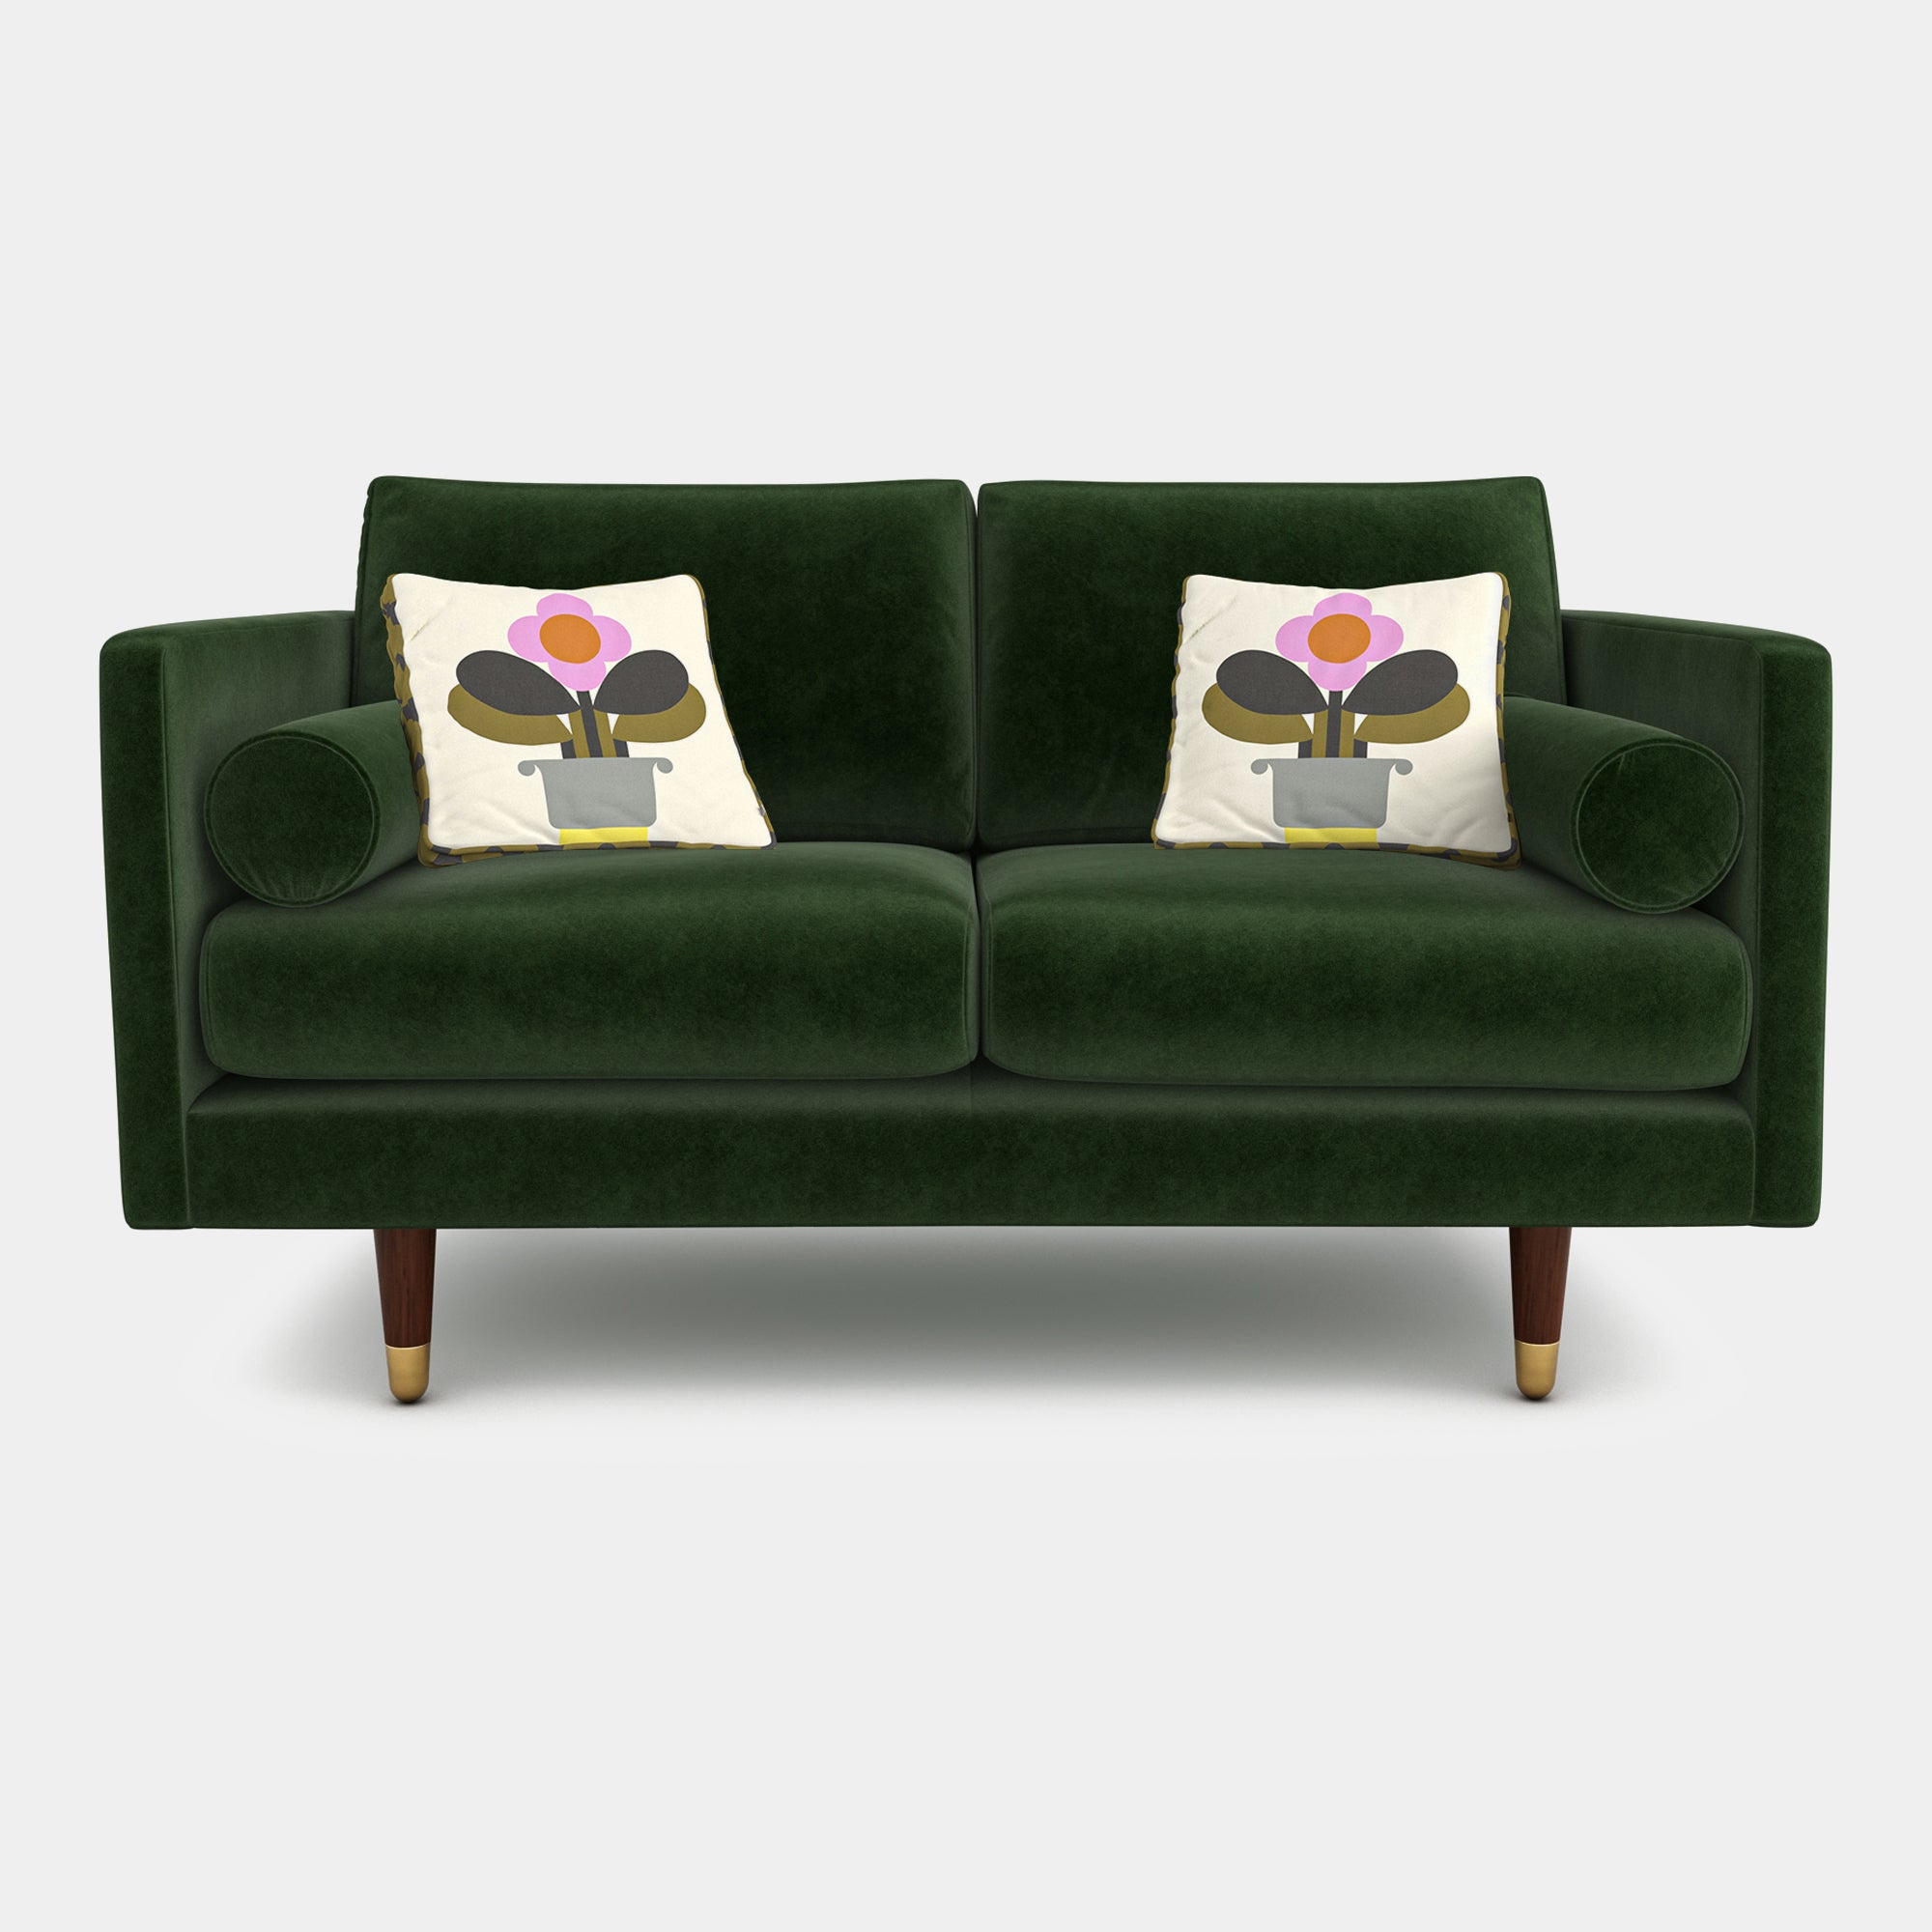 Orla Kiely Mimosa - Small Sofa In Fabric House Plain